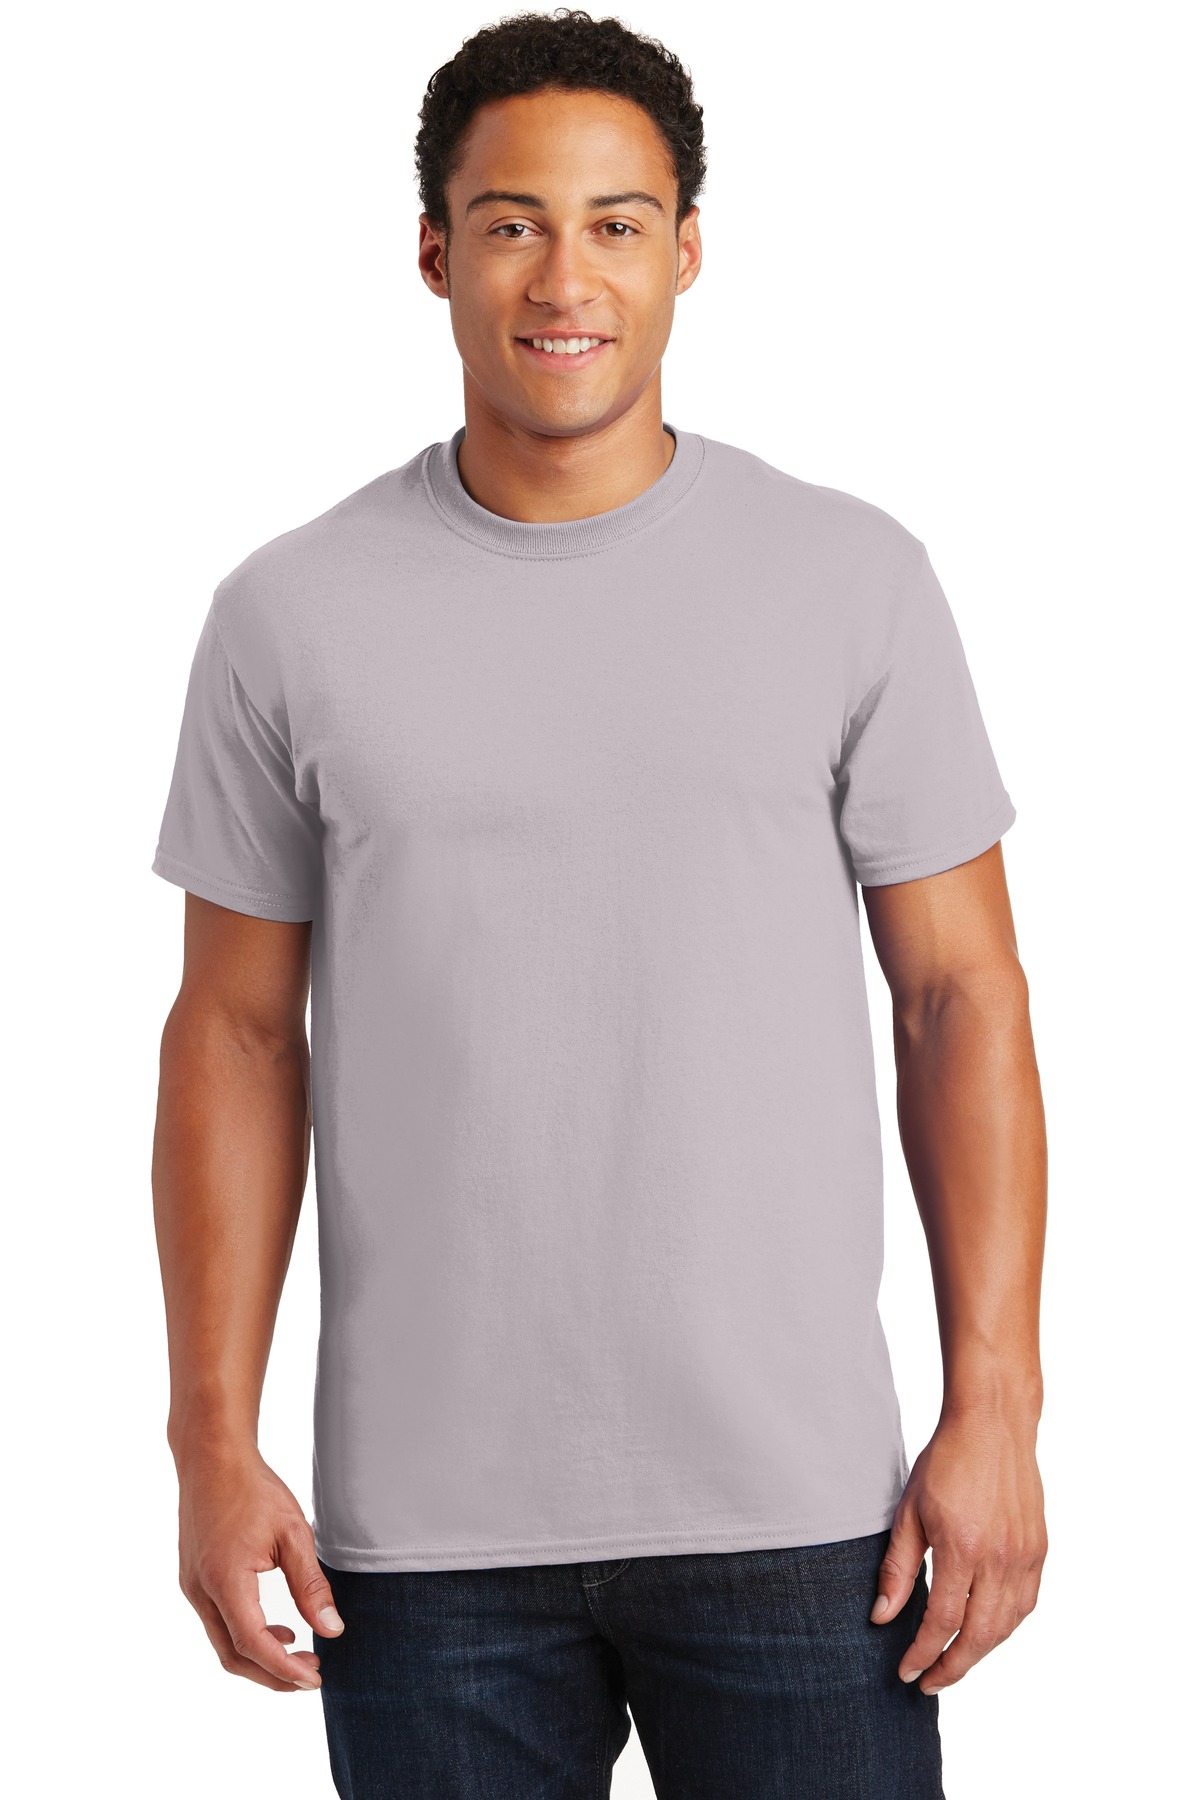 https://images.shirtspace.com/fullsize/b8kL3TrUgZz3%2Fy848%2FysSQ%3D%3D/59126/1230-gildan-g200-ultra-cotton-100-cotton-t-shirt-front-ice-gray.jpg